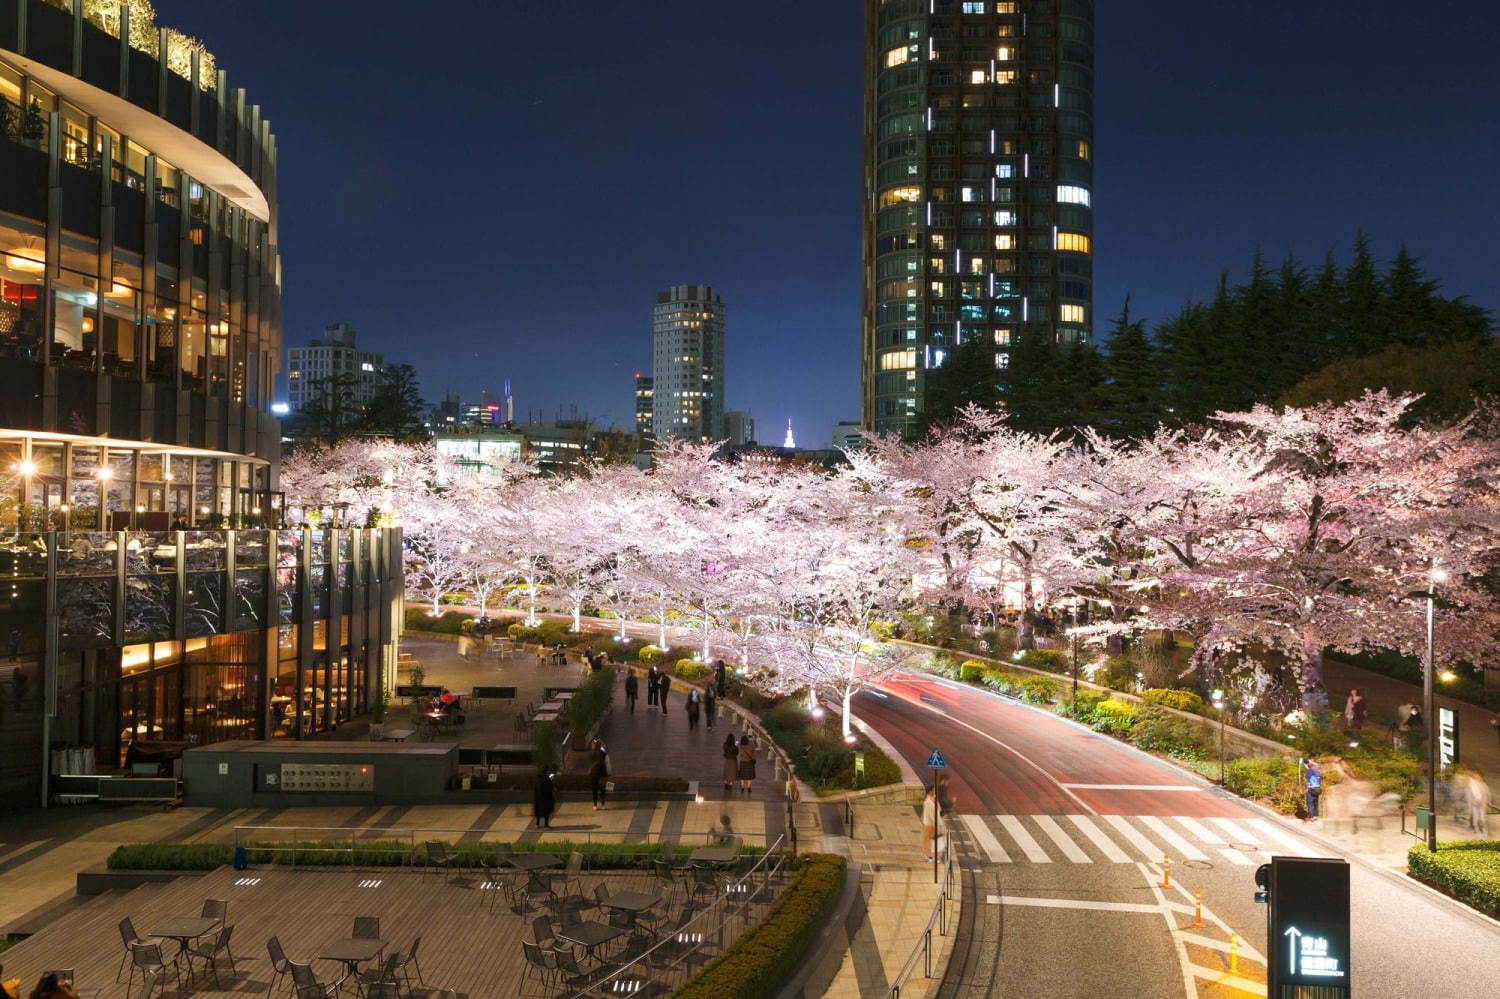 東京ミッドタウンの夜桜ライトアップ 全長0mの桜並木で 都心のお花見 フラワーアートの展示も ファッションプレス